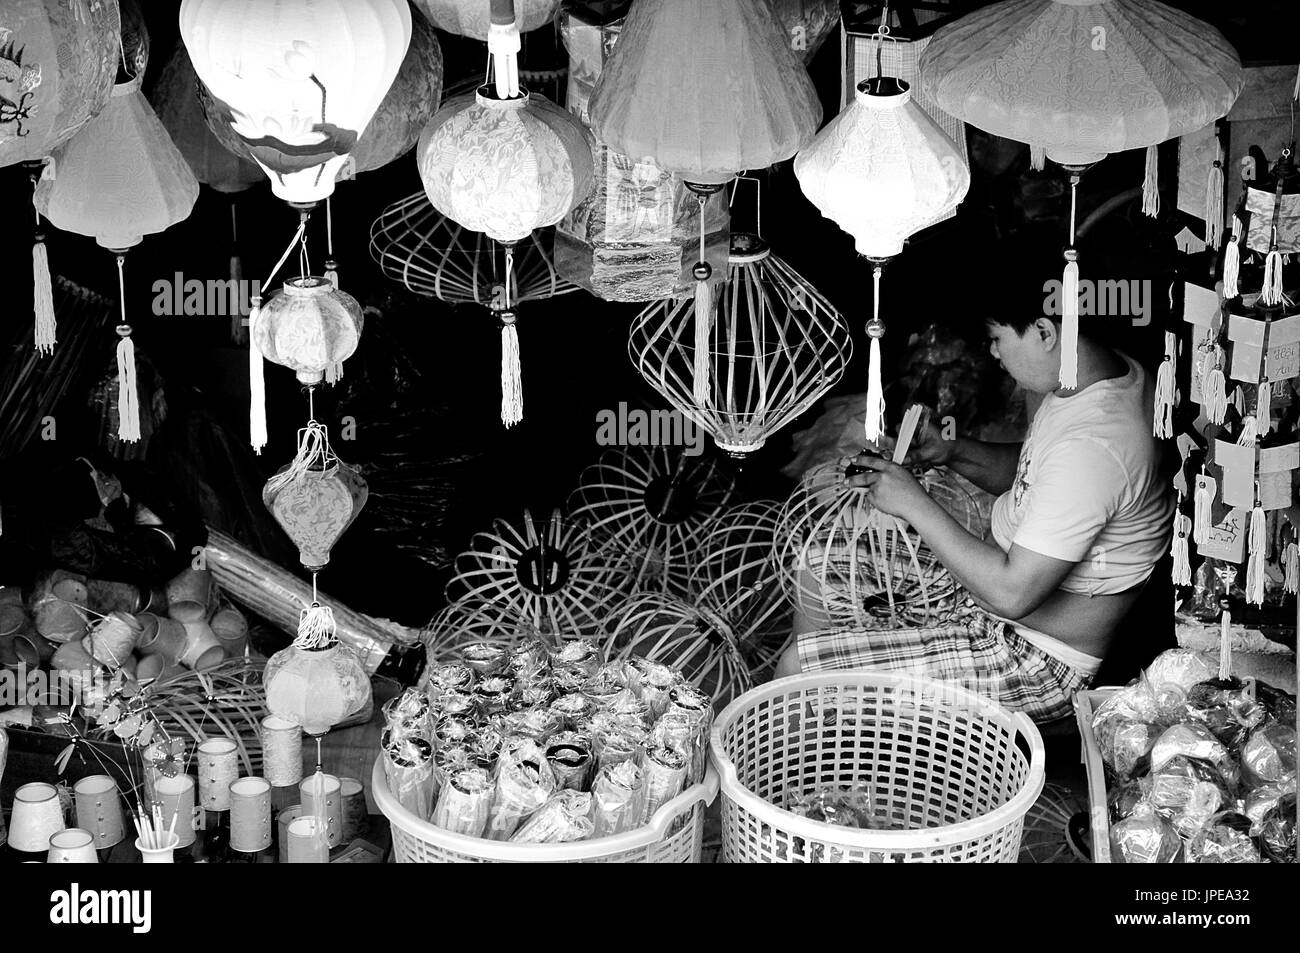 Un jeune artisan, l'accent dans son travail, dans une petite boutique sur les rues de Hanoi, Vietnam Banque D'Images